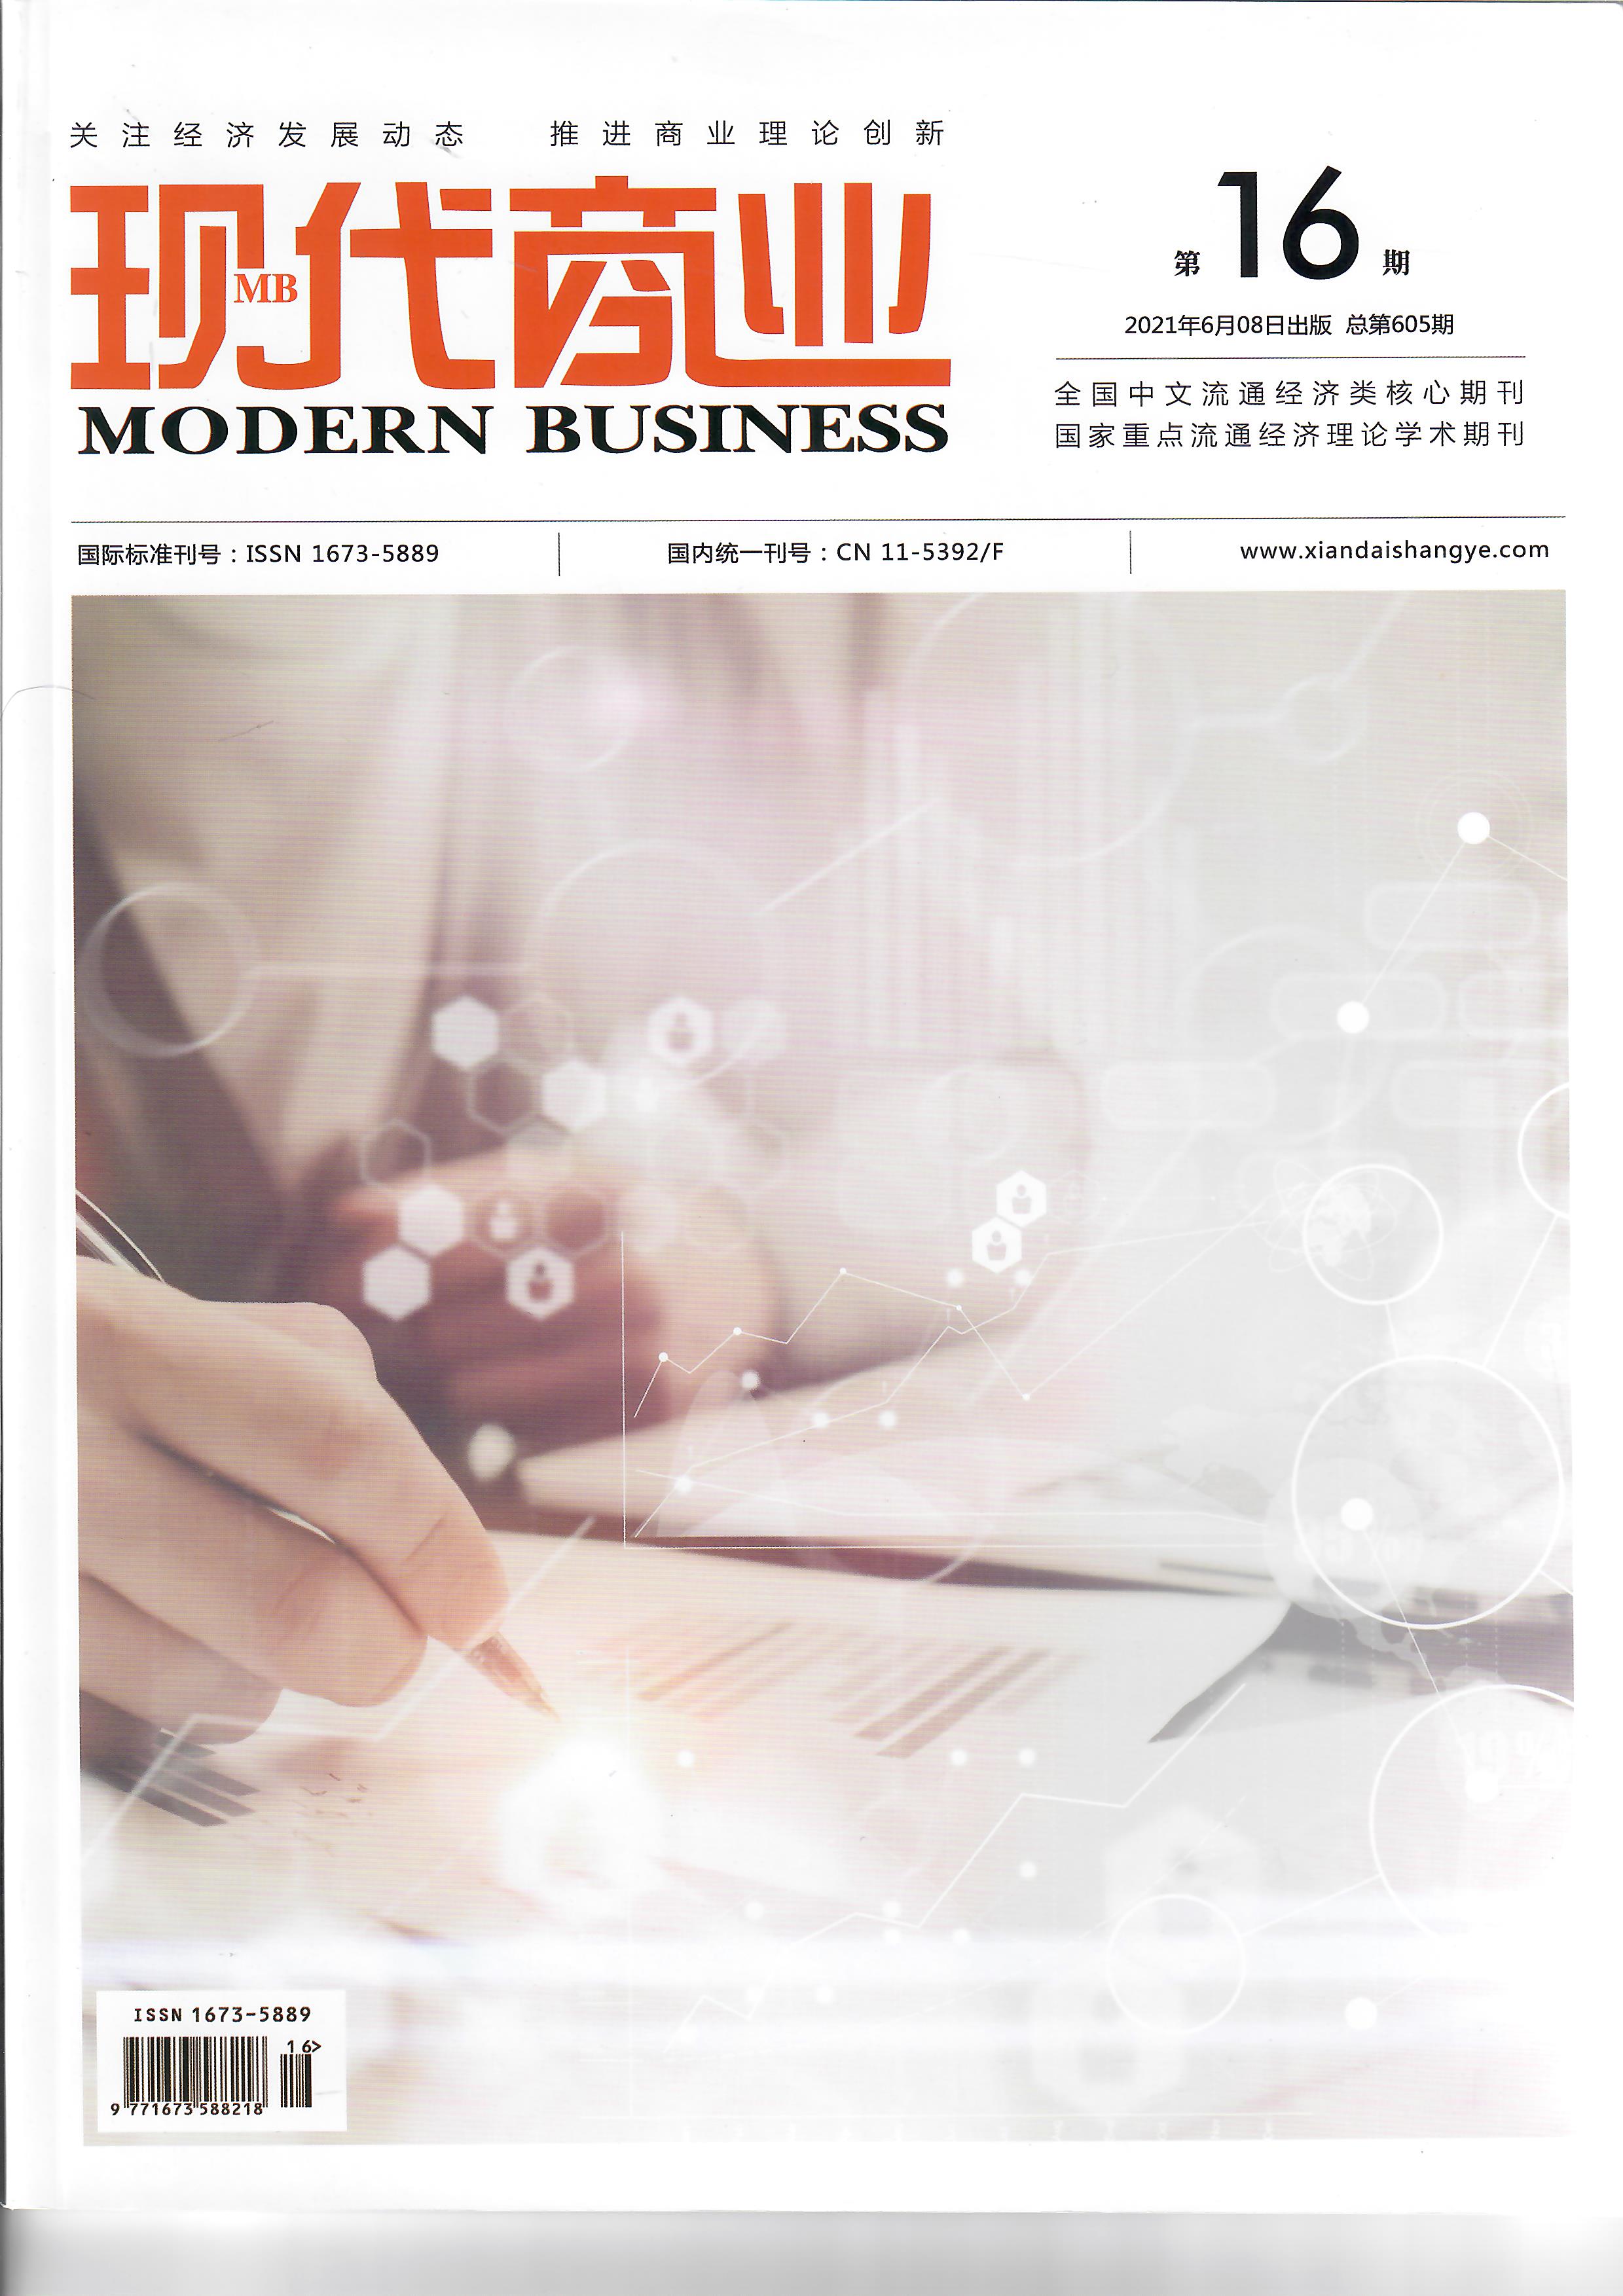 《现代商业》杂志2022年6月第17期目录国家级 旬刊